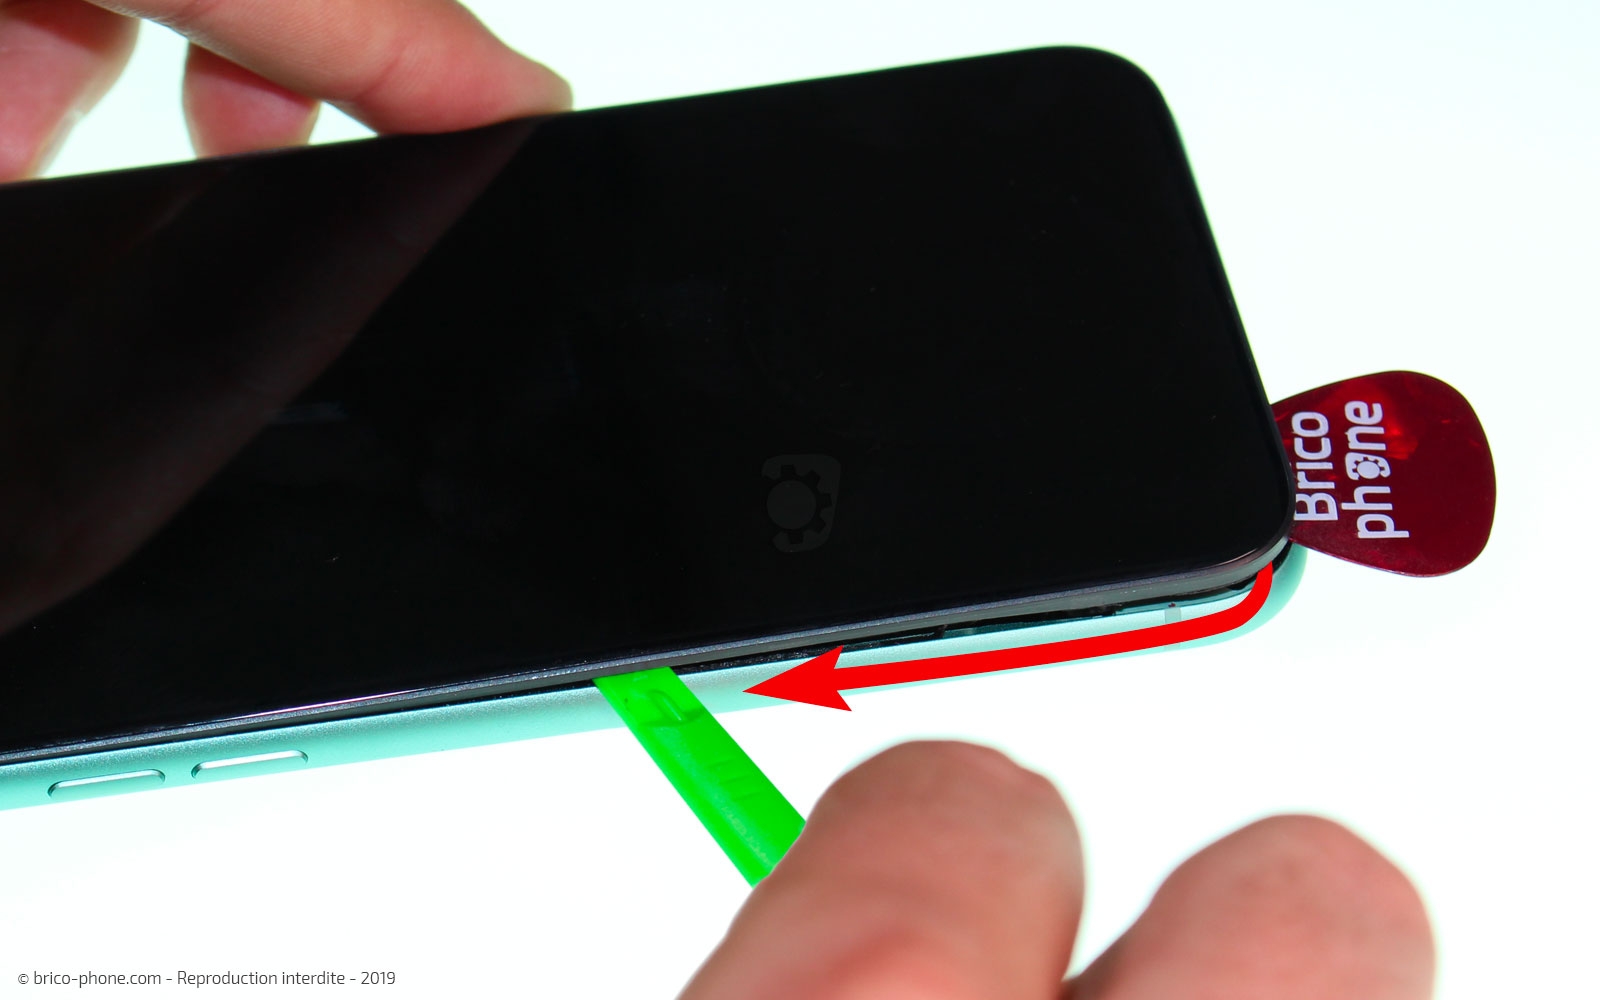 Comment changer votre écran d'iPhone 11 ? – TUTO